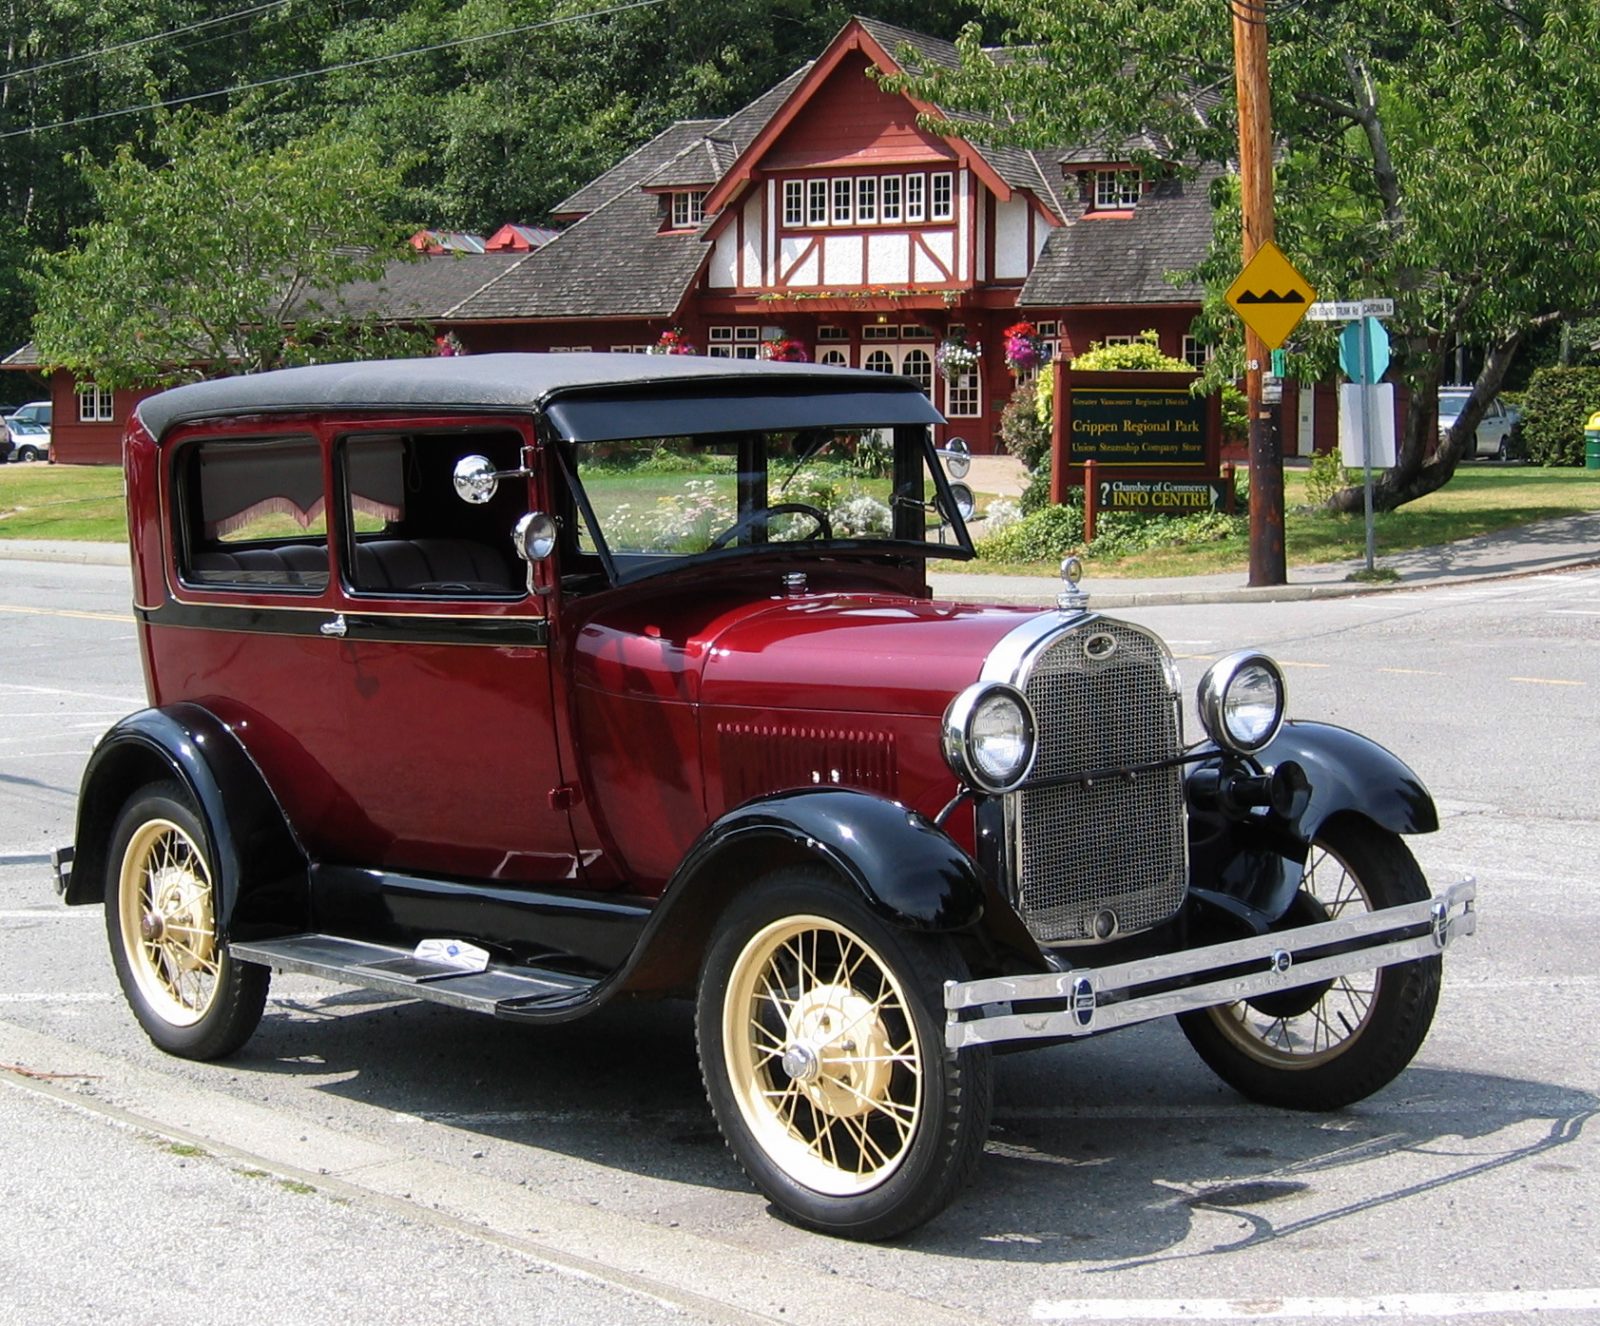 27 octobre 1927 – Début de la production de la Ford modèle A